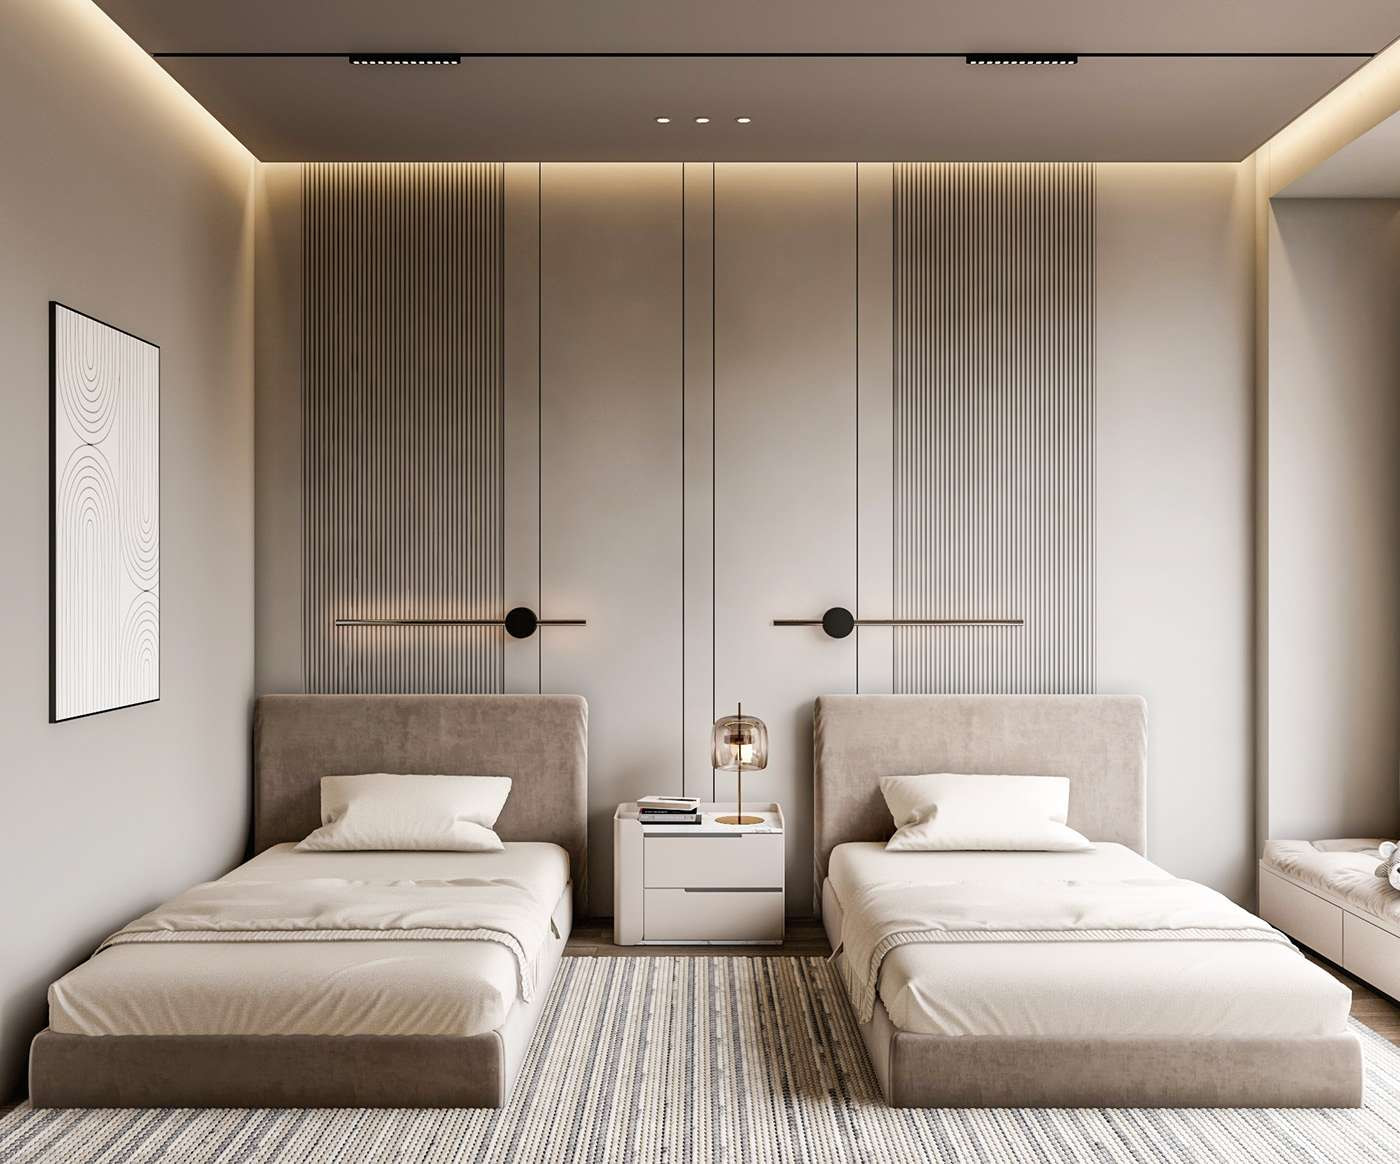 Thiết kế phòng ngủ 2 giường theo phong cách Minimalism 